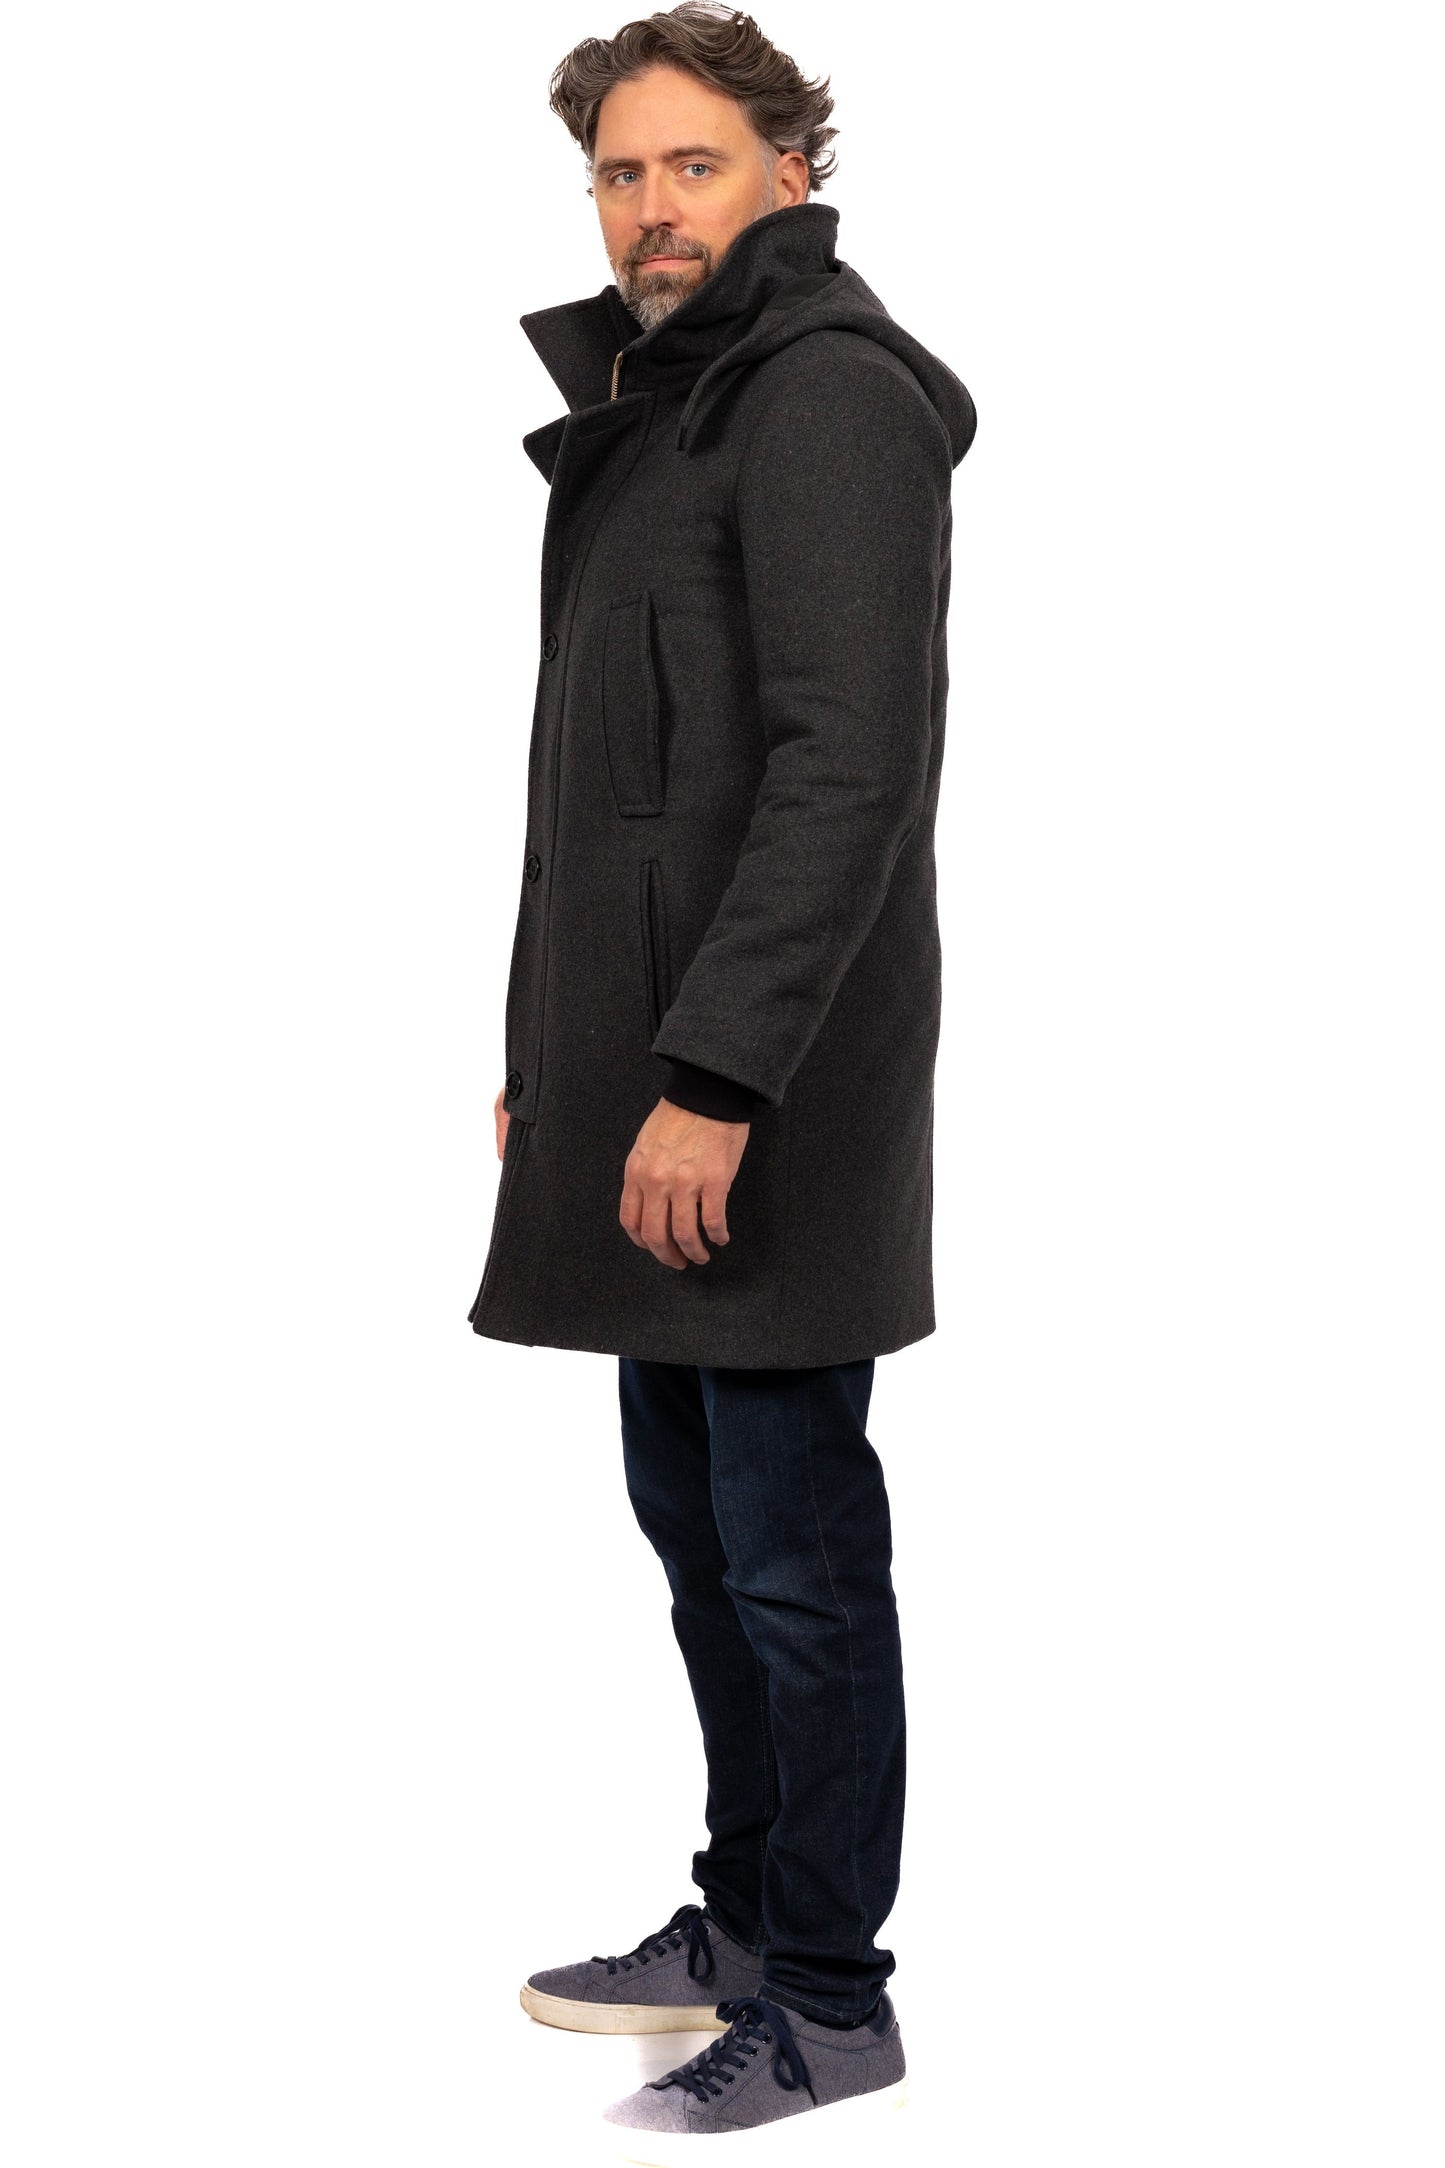 Desloups manteau d'hiver canadienne pour homme avec fermoir et capuchon en 100% laine doublé